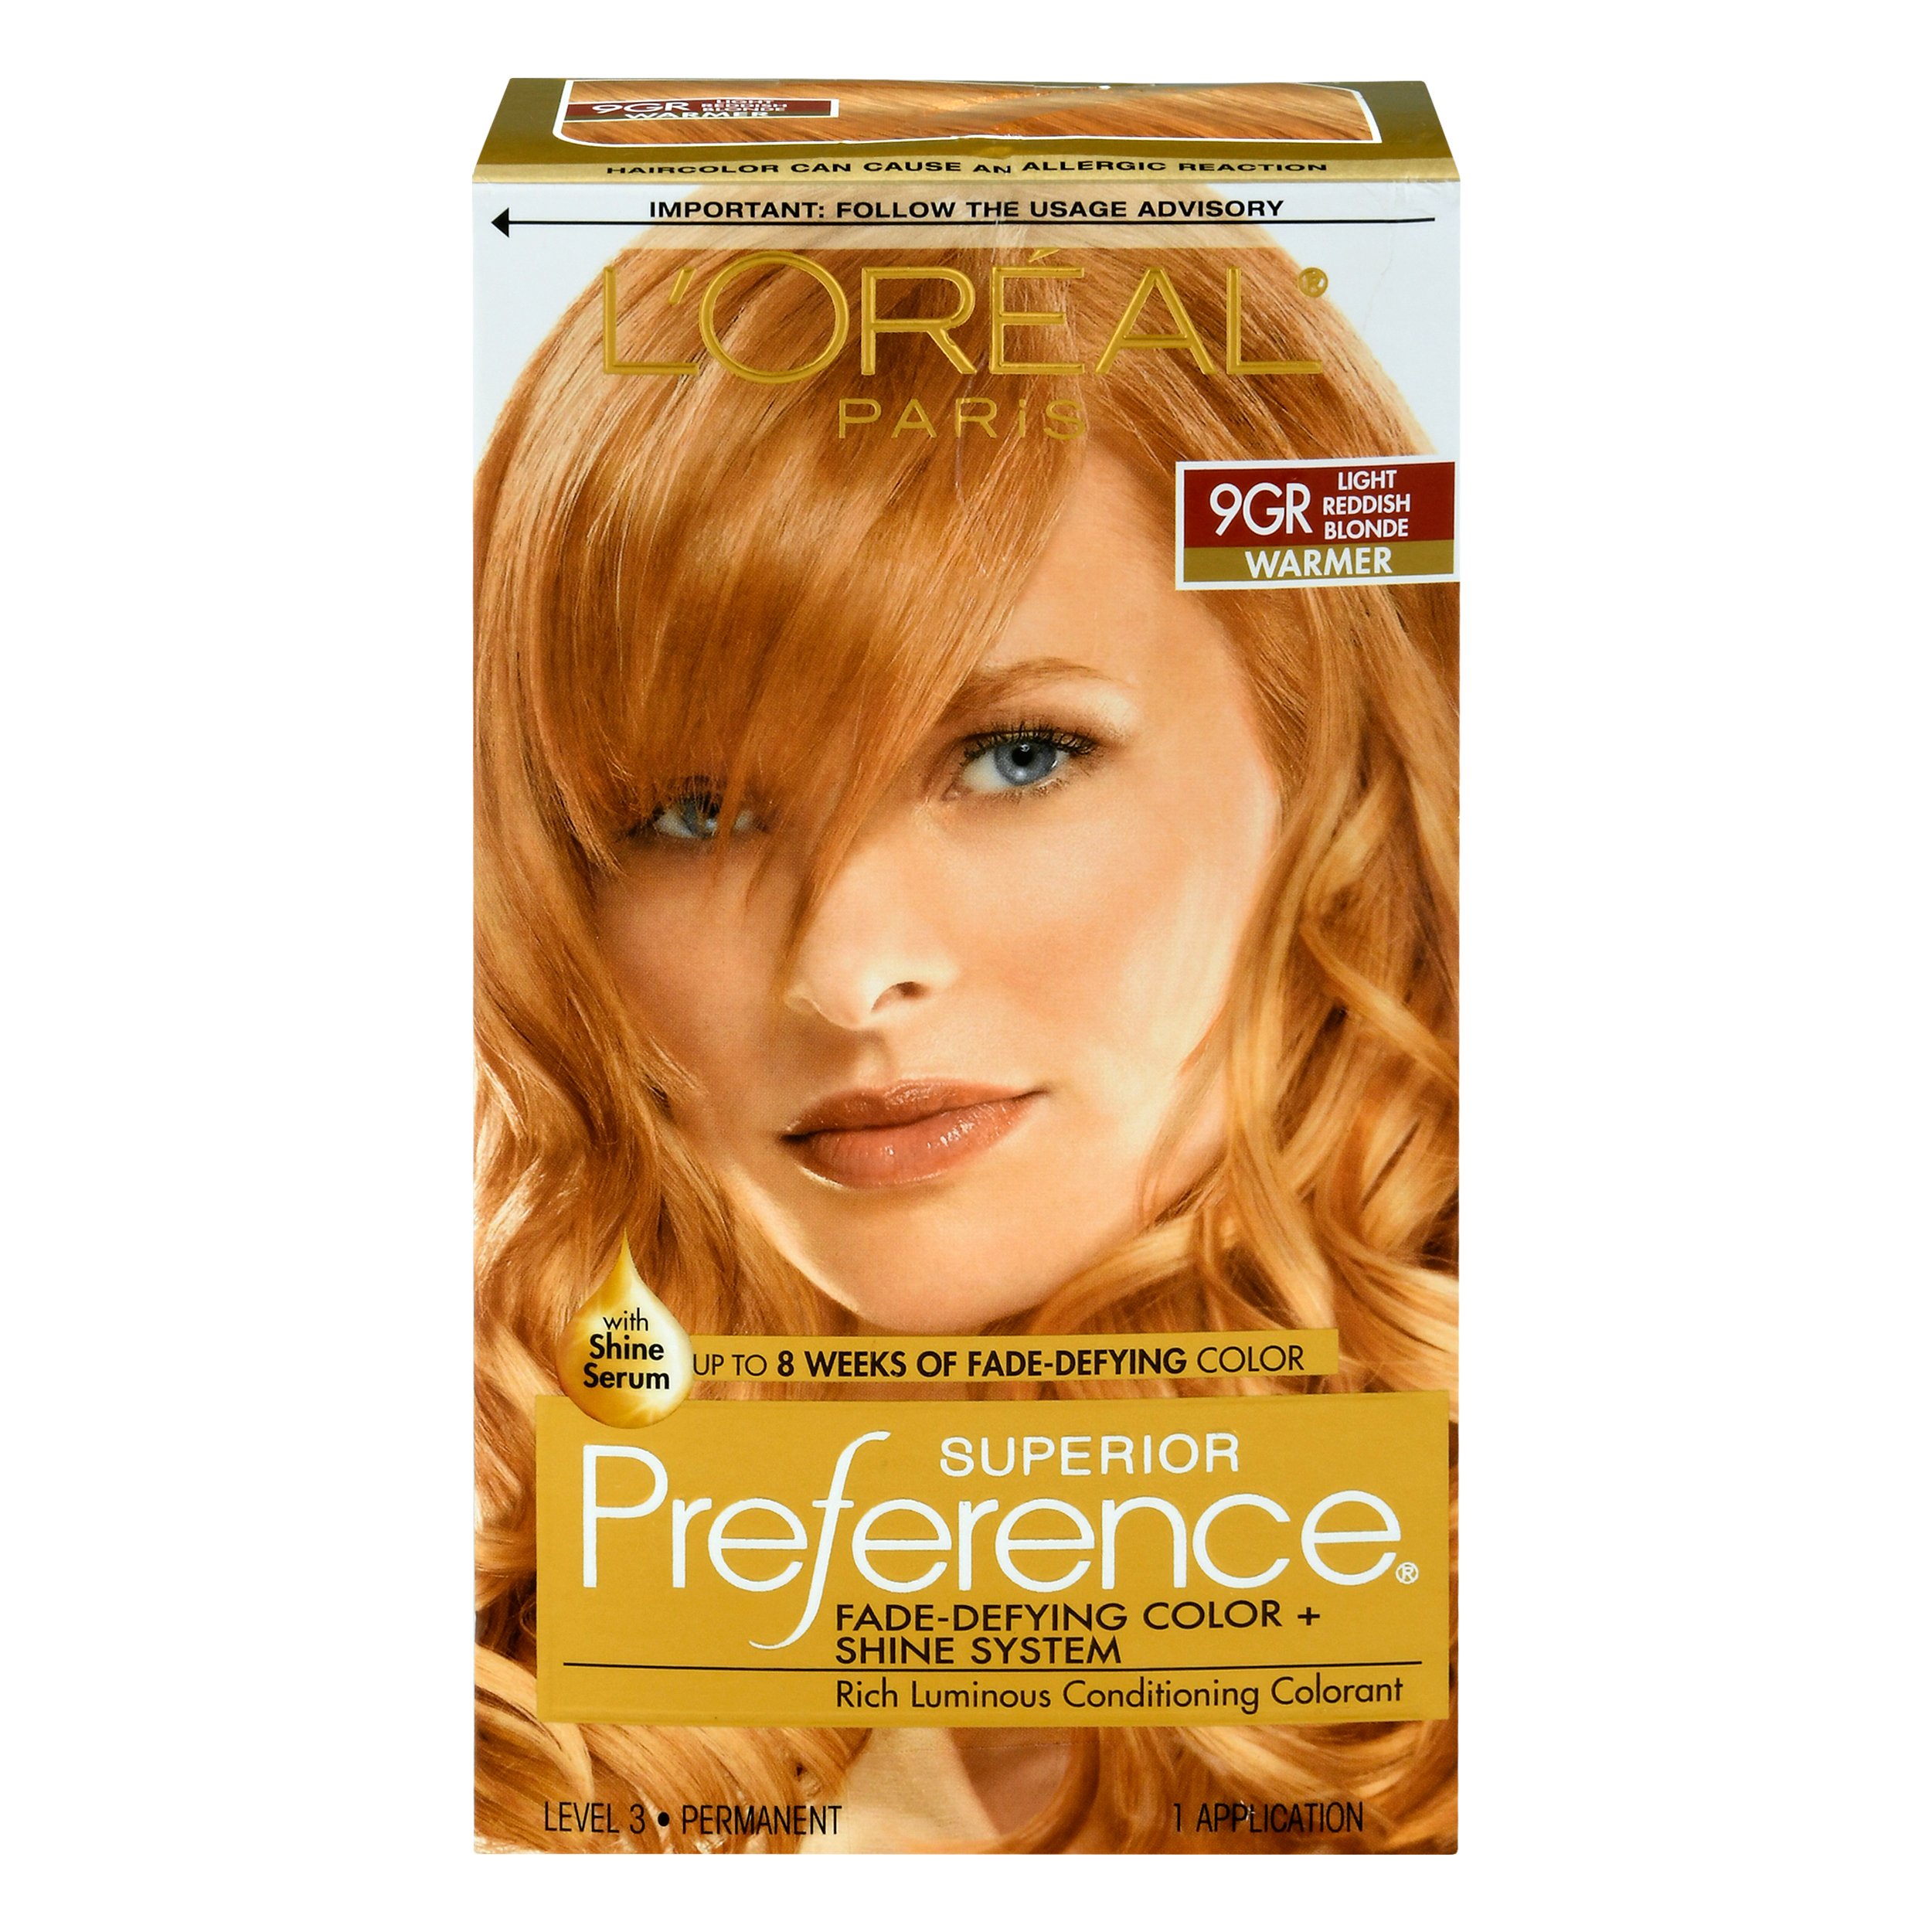 L'Oréal Paris Superior Preference Permanent Hair Color, 9GR Light Golden  Reddish Blonde - Shop Hair Care at H-E-B